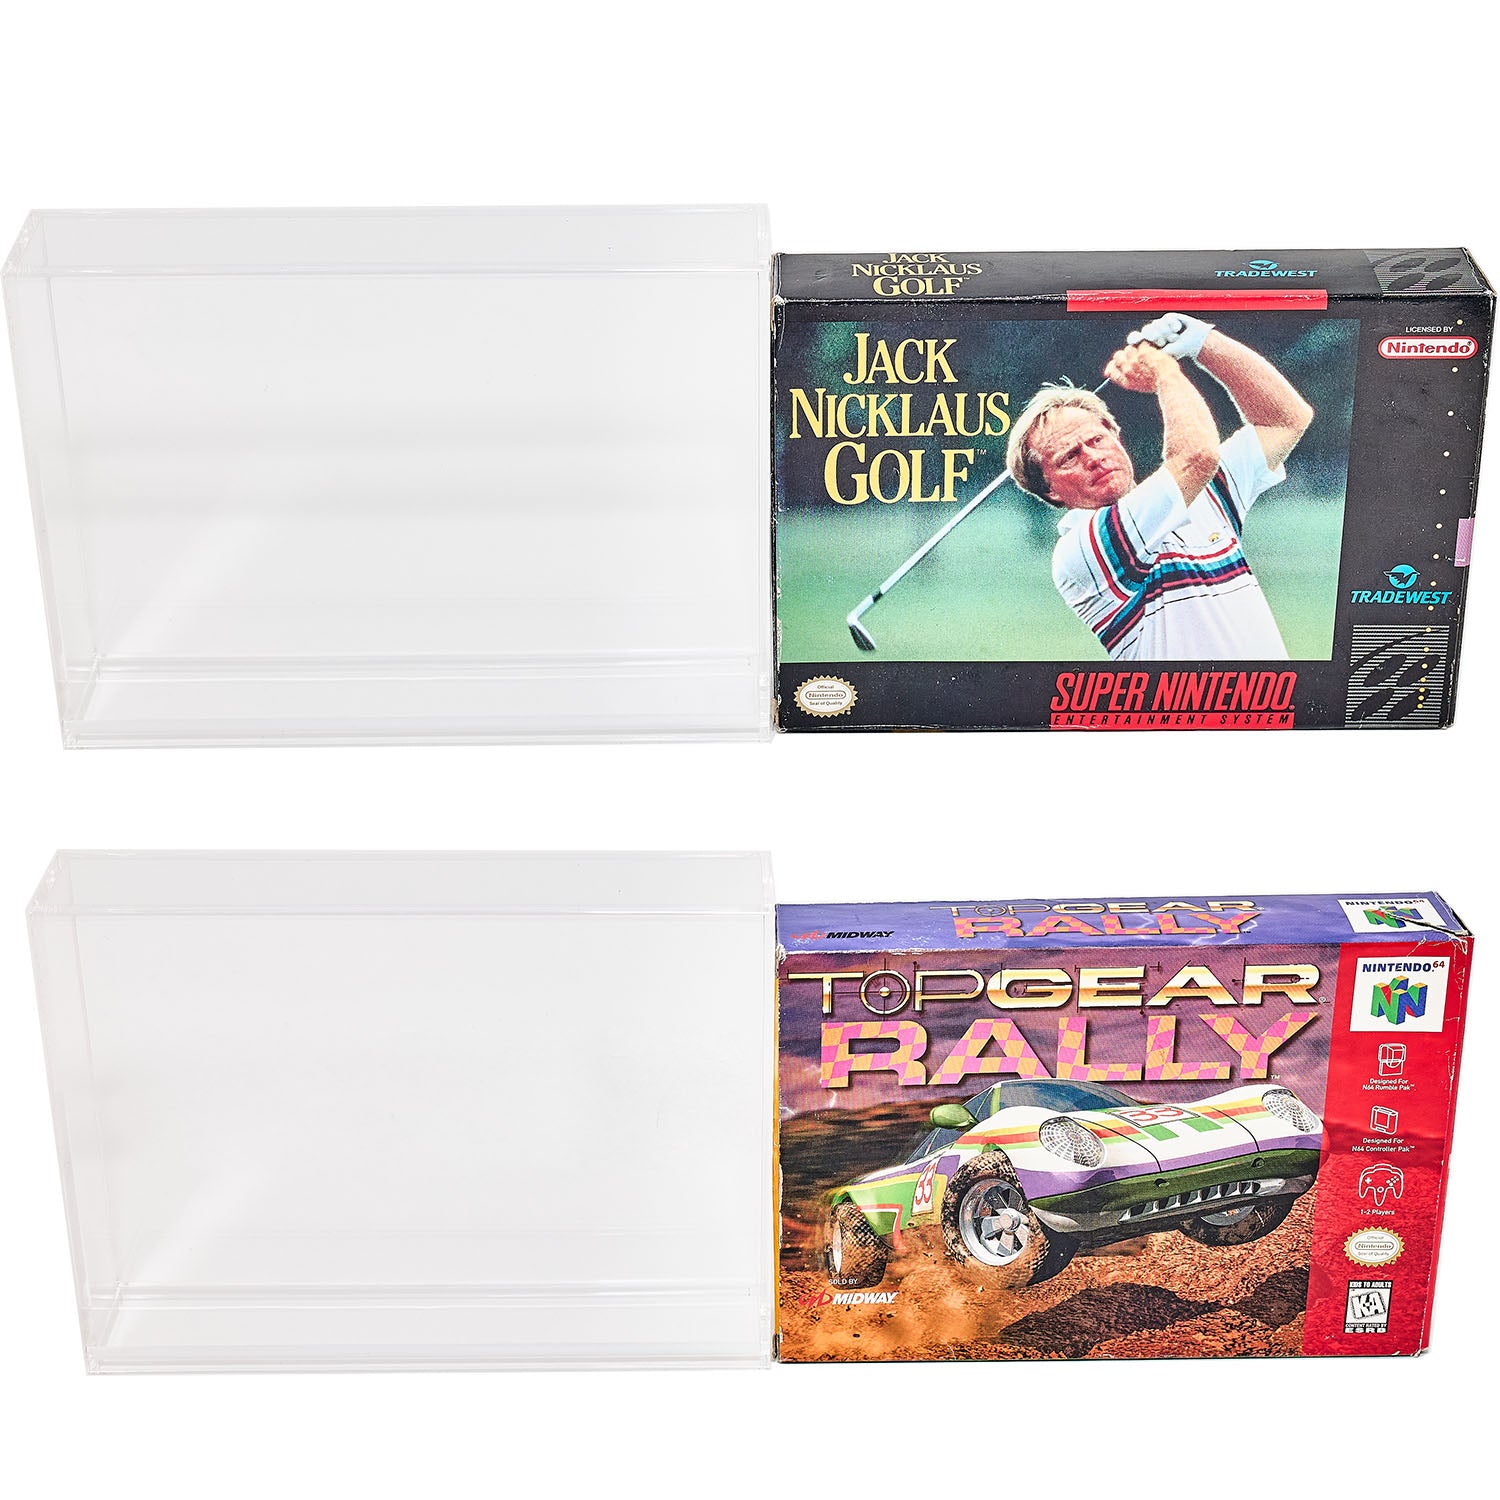 Premium Acrylic Case for Super Nintendo SNES & N64 Game Box